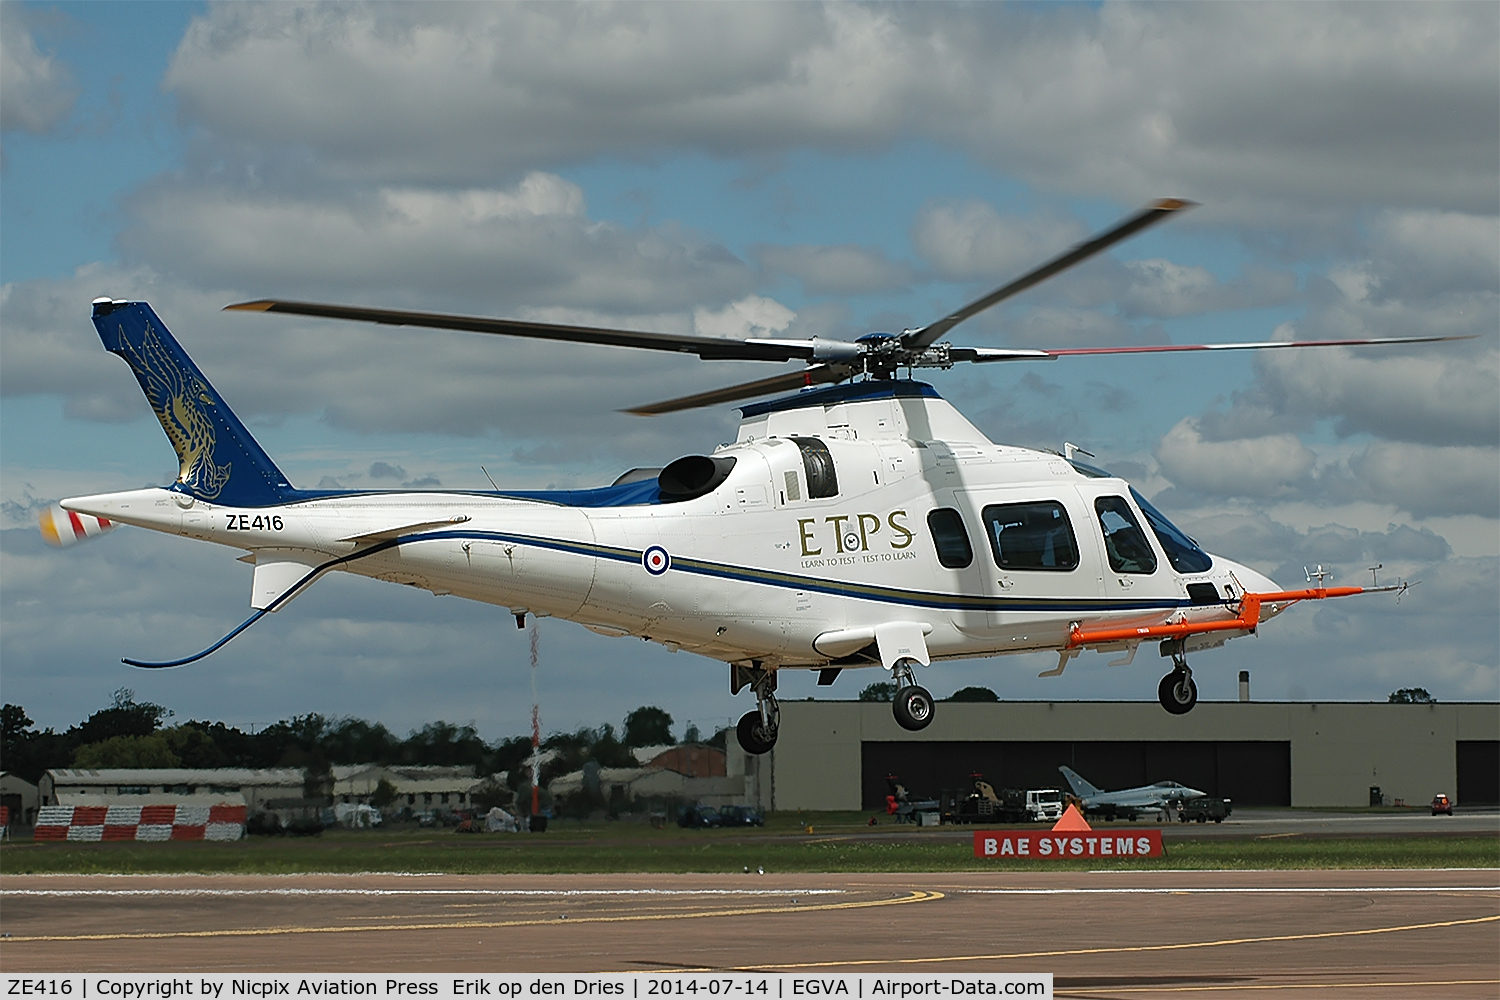 ZE416, 2004 Agusta A-109E Power C/N 11173, A-109E ZE416 in the latest ETPS scheme